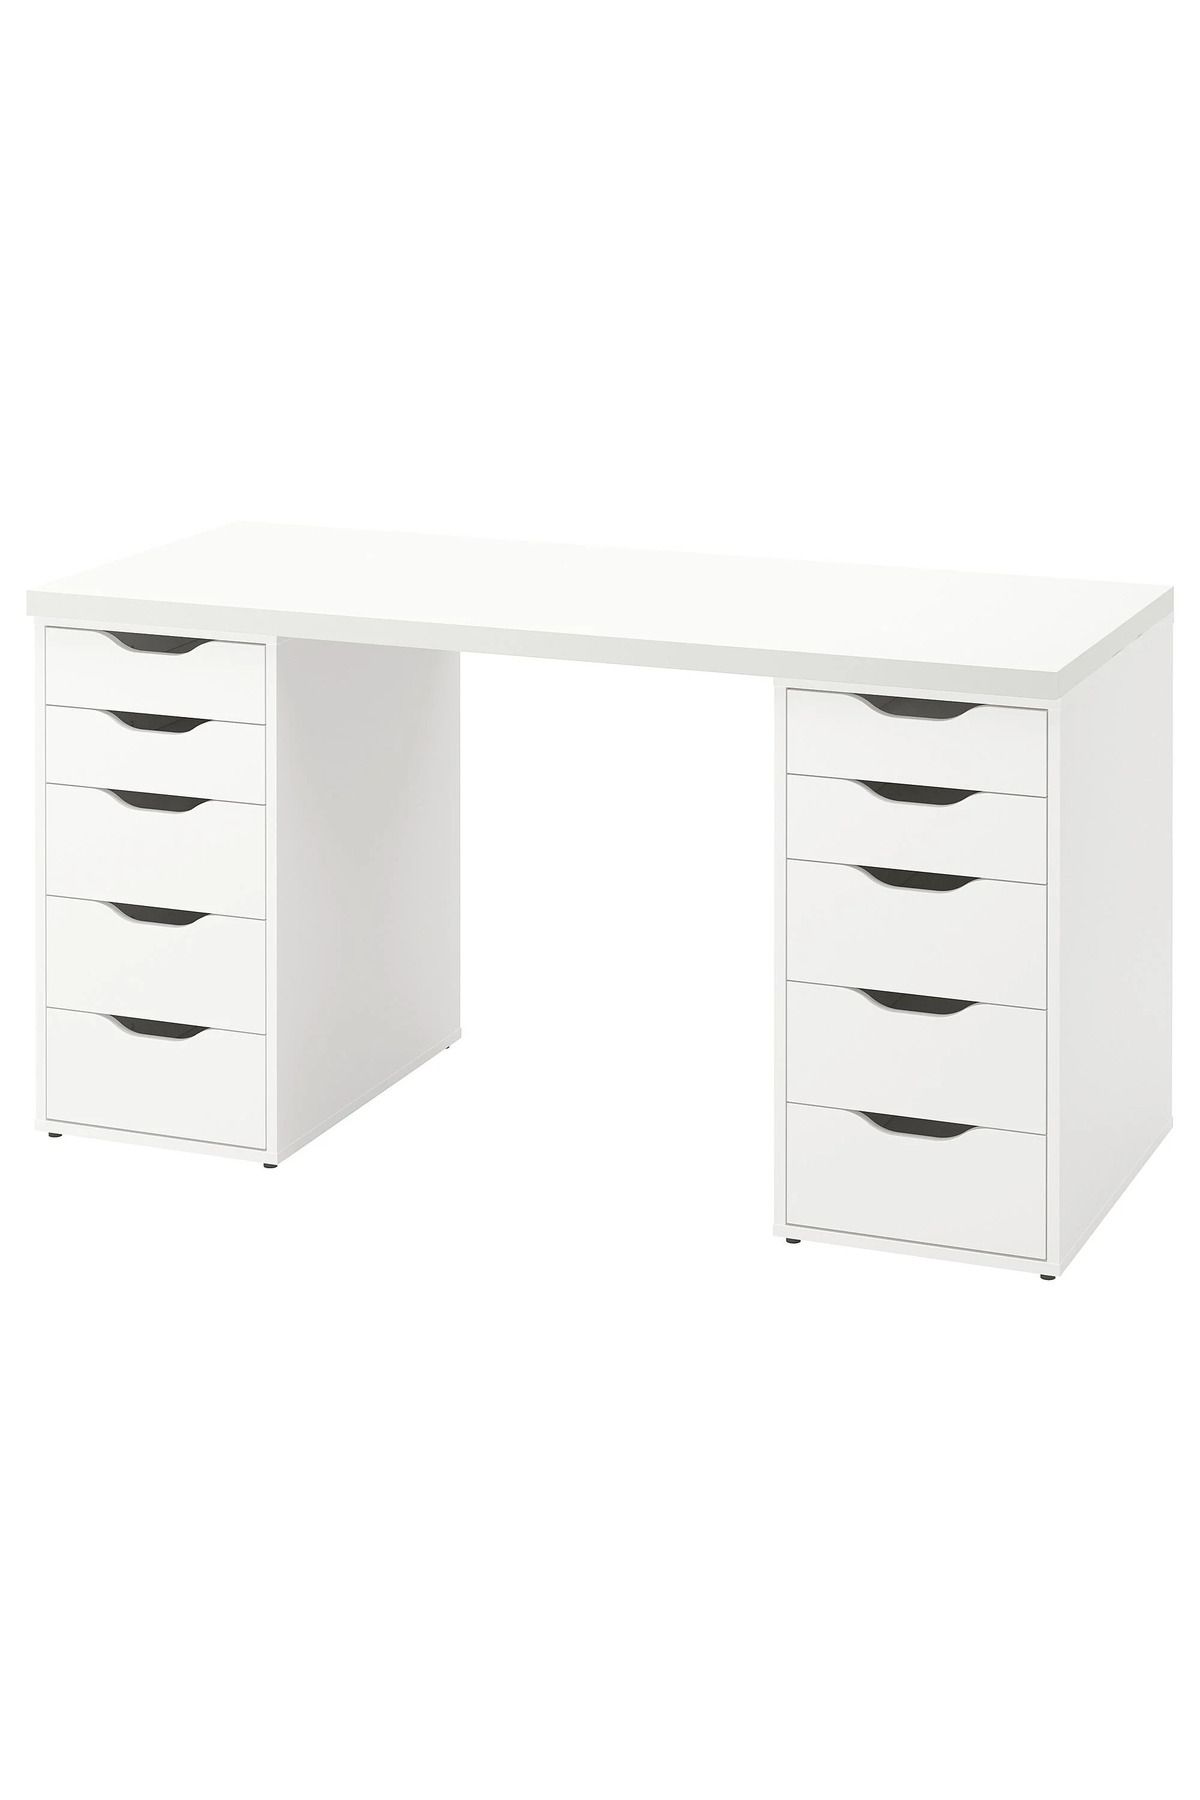 IKEA 2 KESONLU, 5'er Çekmeceli Stoperli, Çalışma Masası/ Makyaj Masası 140x60 cm